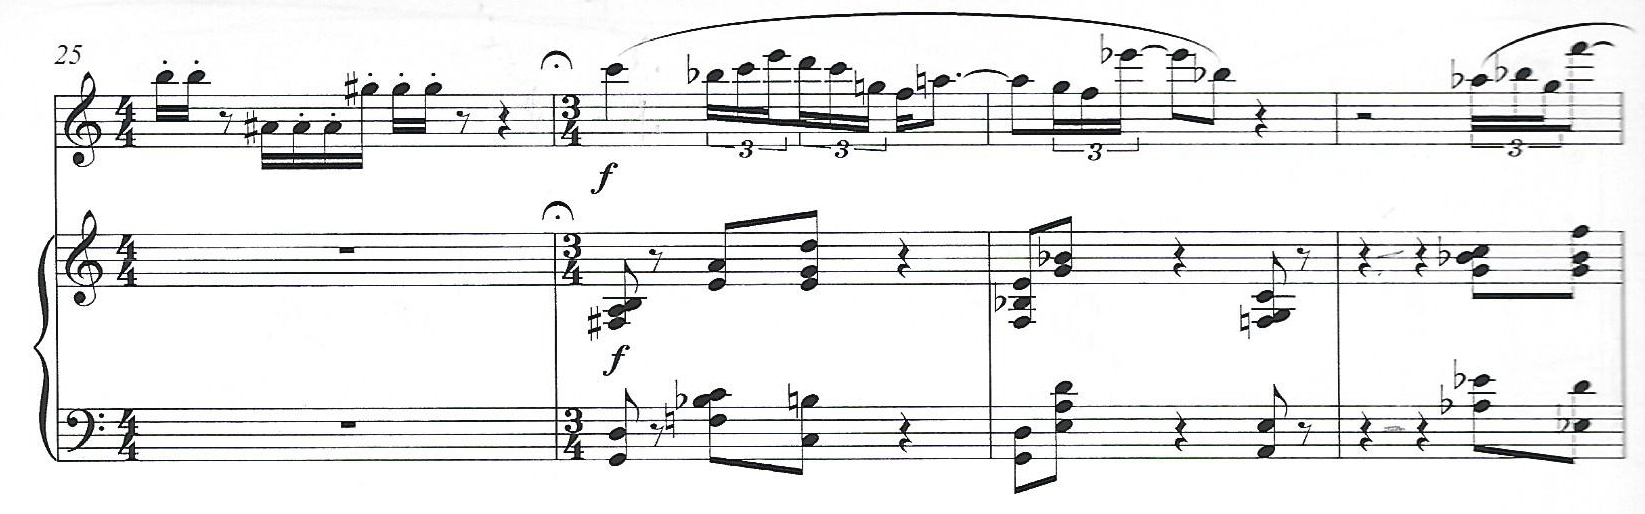 A passage from the score of Eleanor Cory's Violin Sonata No. 1